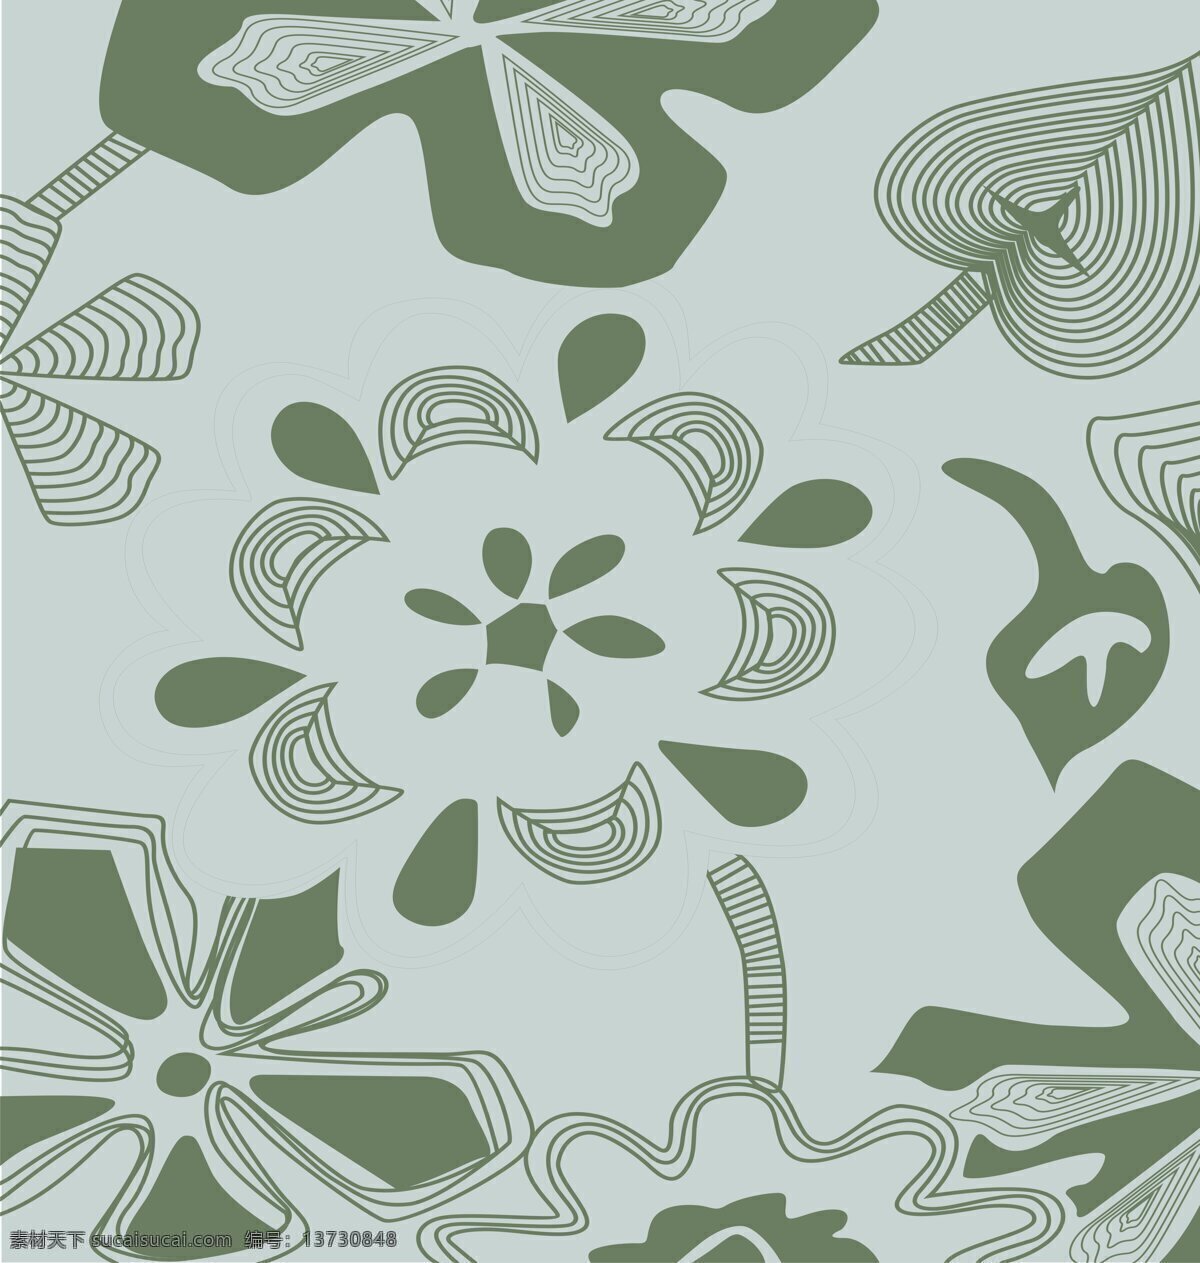 绿野仙踪 玻璃移门图案 线条 花纹 环境设计 其他设计 设计图库 底纹边框 花边花纹